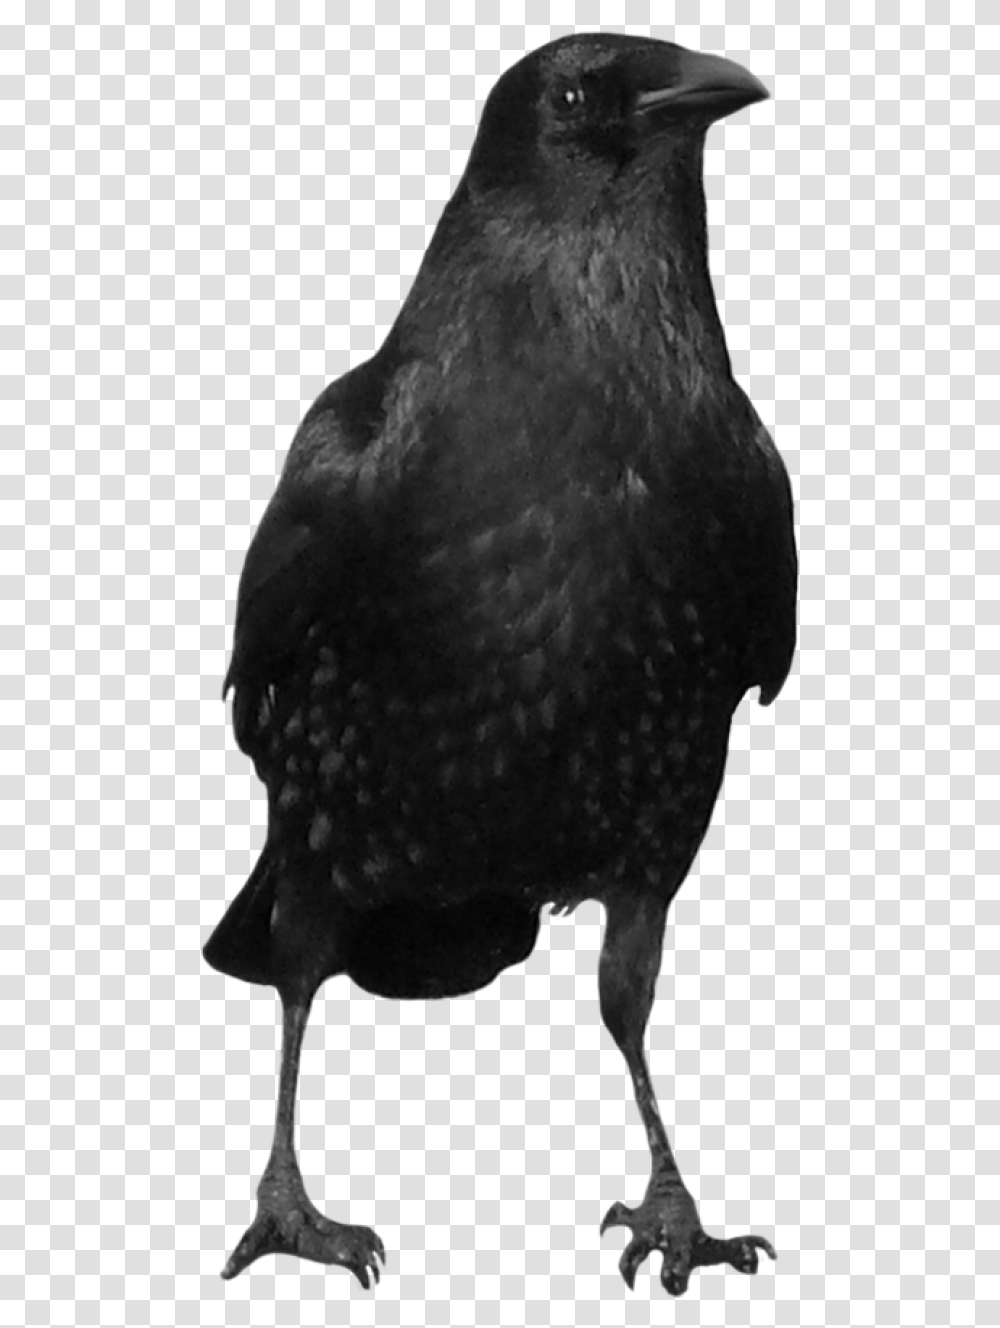 Crow, Bird, Animal, Face, Beak Transparent Png